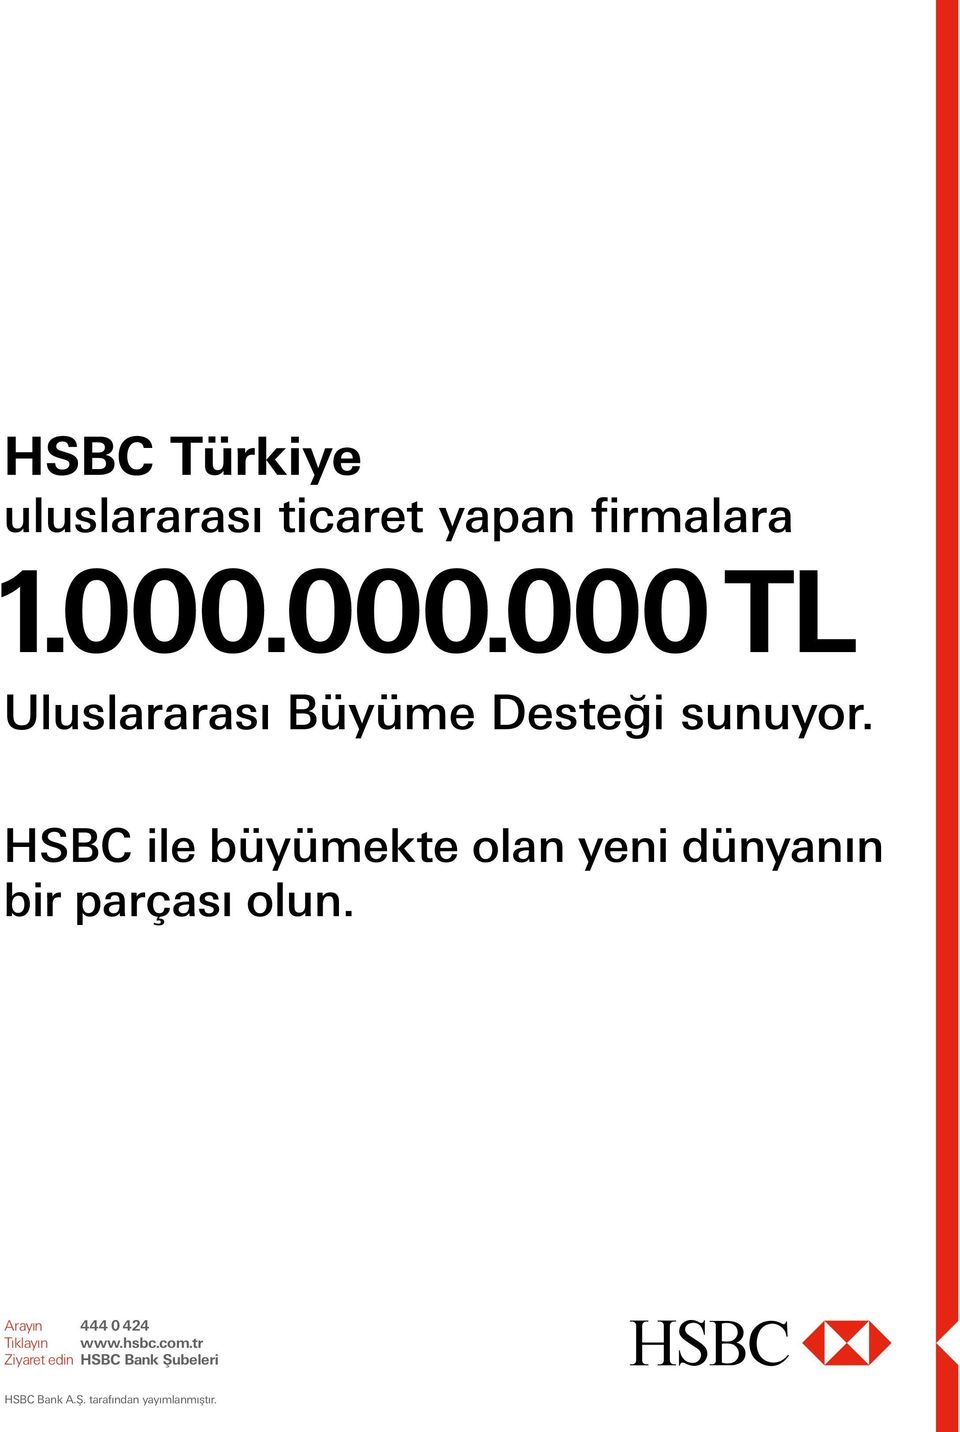 HSBC ile büyümekte olan yeni dünyanın bir parçası olun.